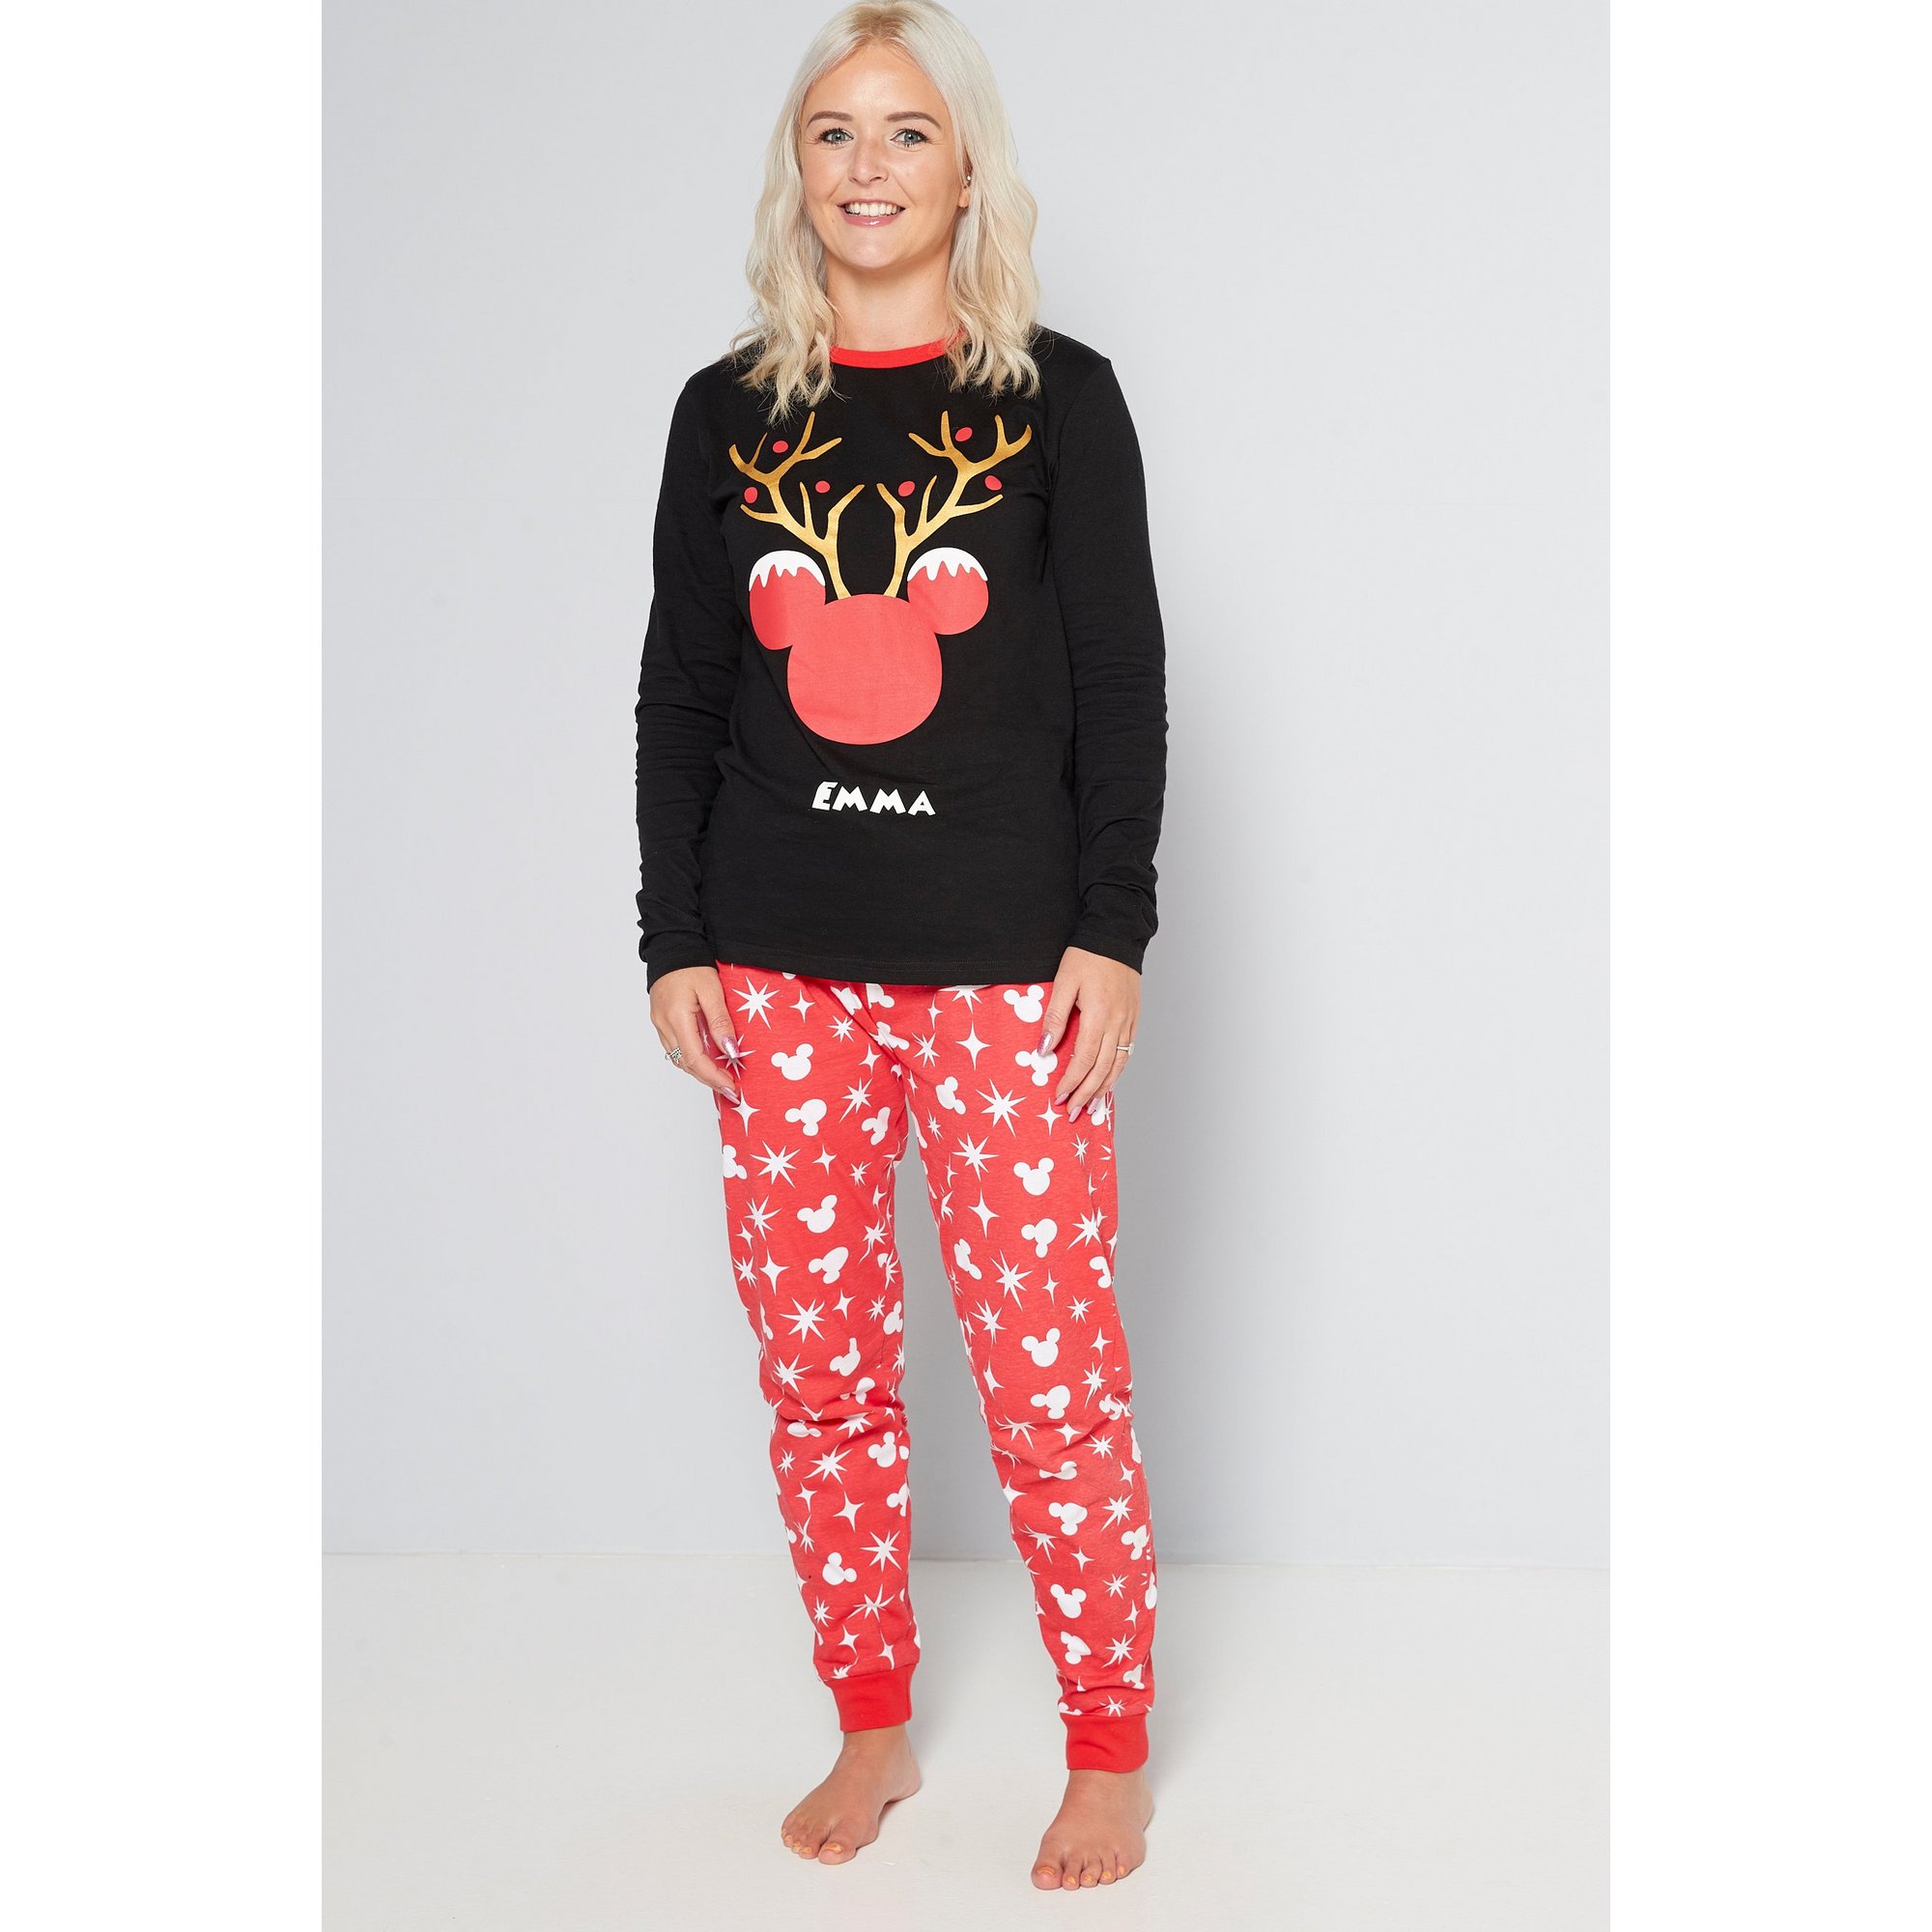 Personalised Ladies Christmas Mickey Mouse Pyjamas